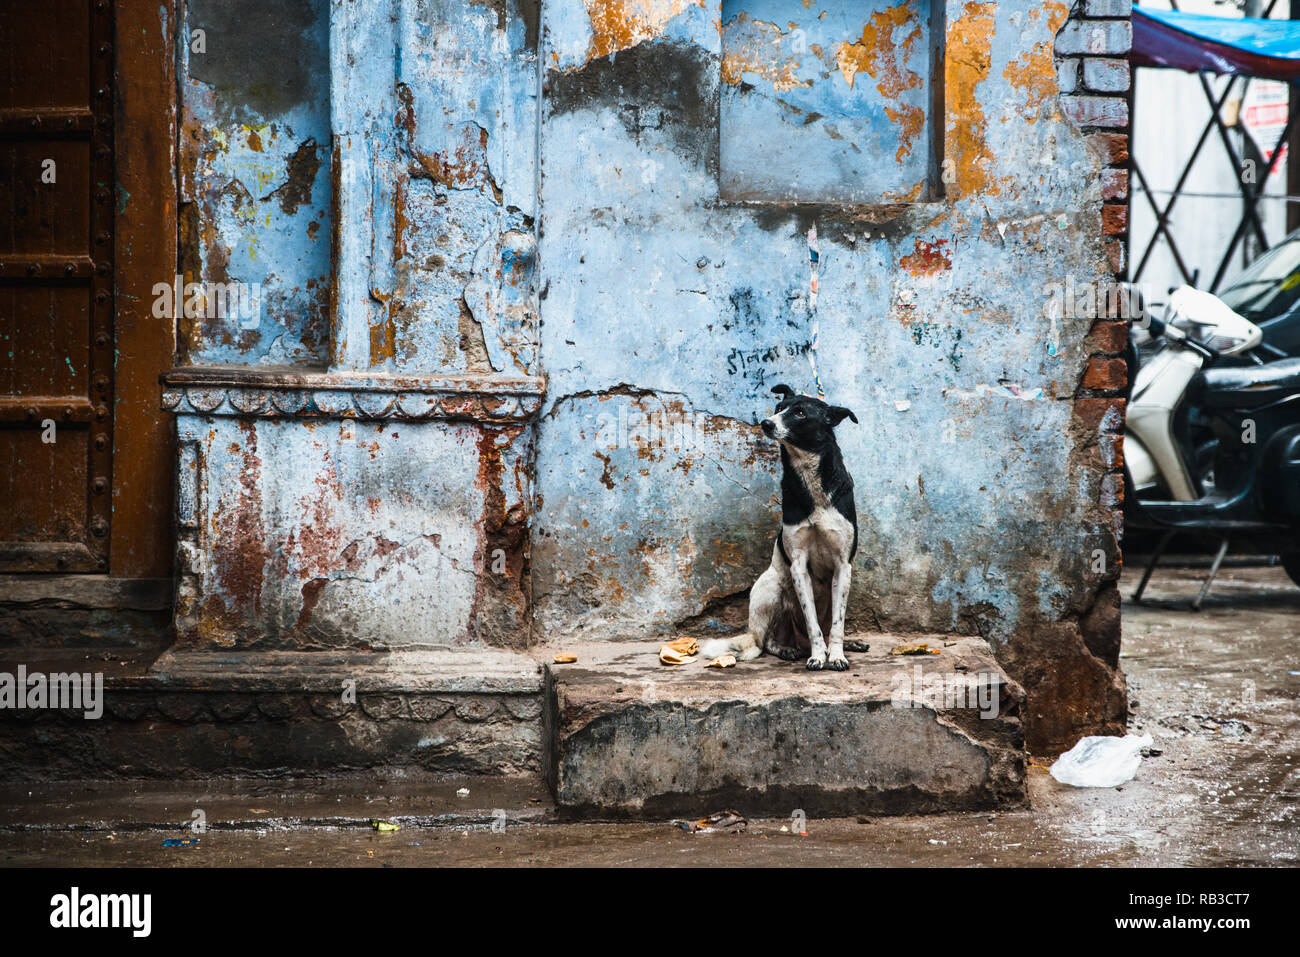 Straße Hund in den Straßen von Neu Delhi in Indien sitzen mit einer blauen Wand hinter als Hintergrund. Hund ist schwarz-weiß gefleckte und ist traurig Stockfoto